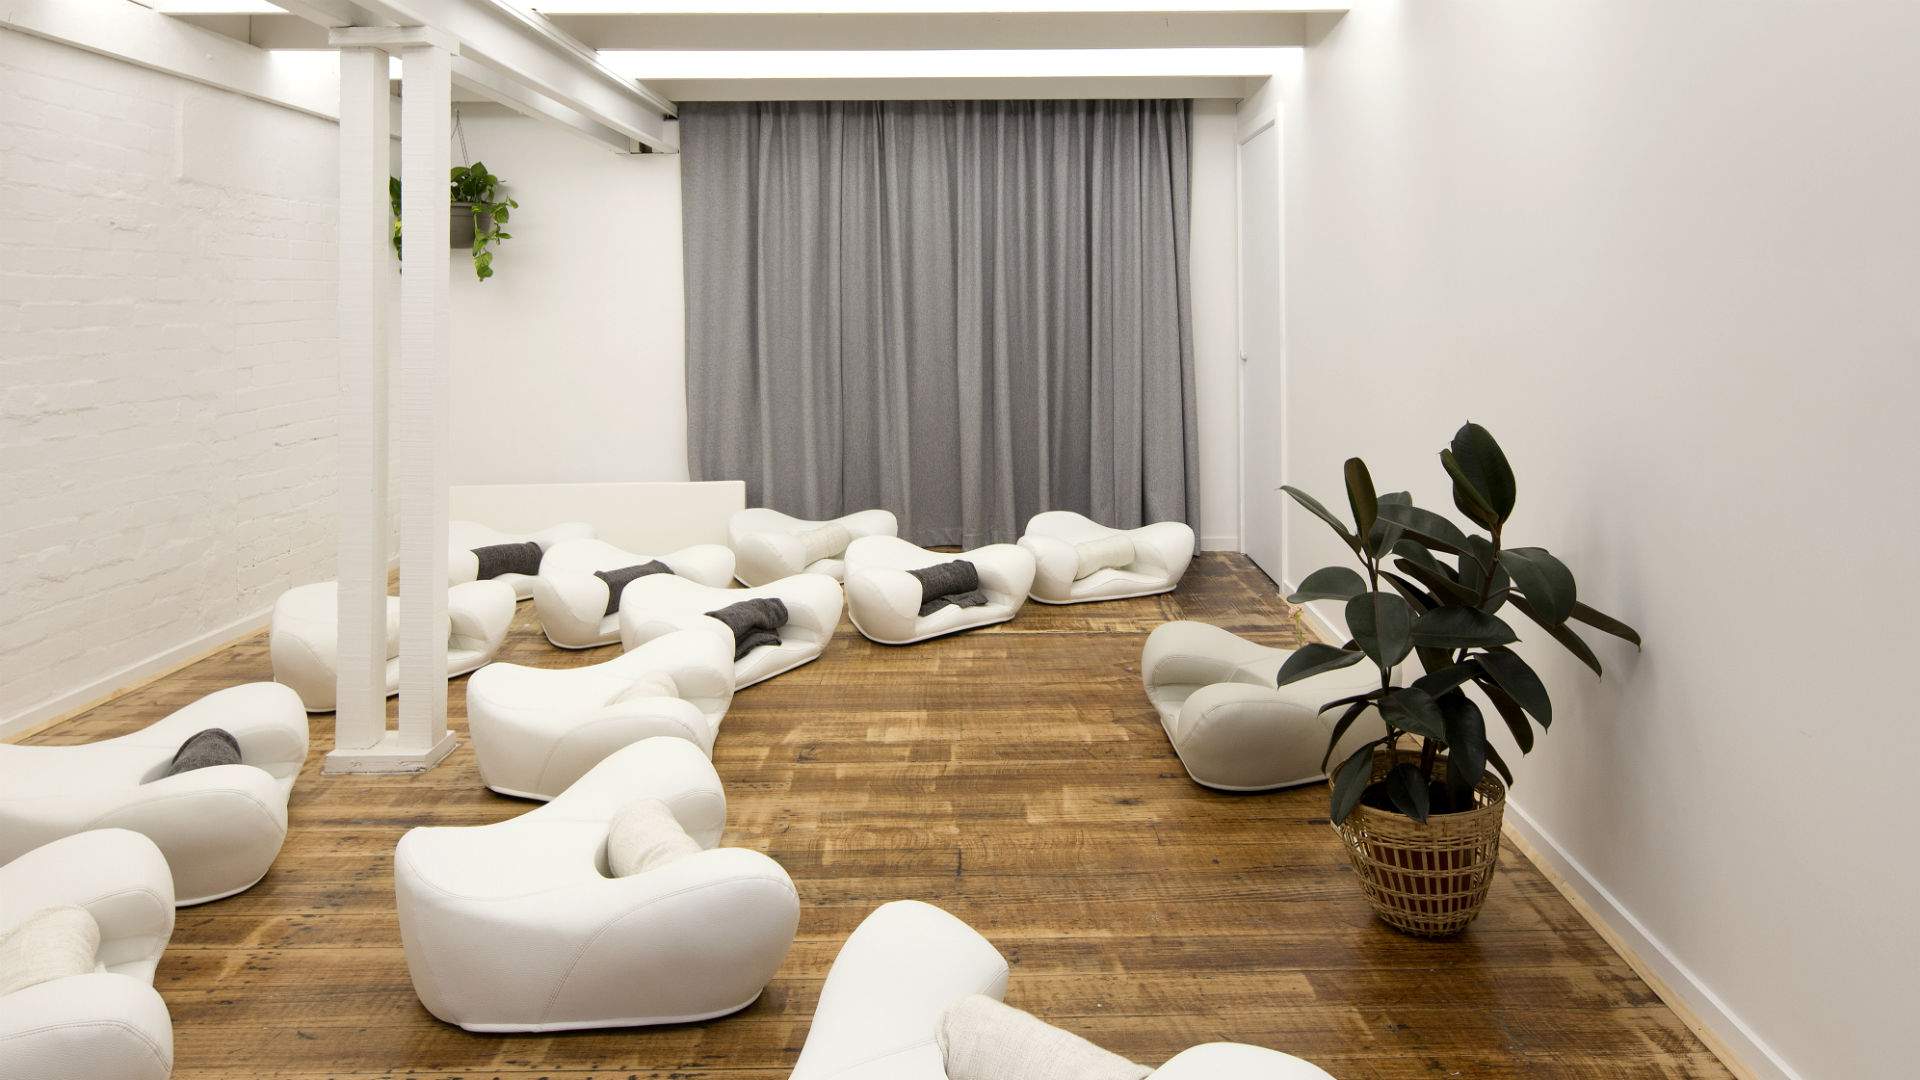 Collingwood's Landed a New Modern Meditation Studio